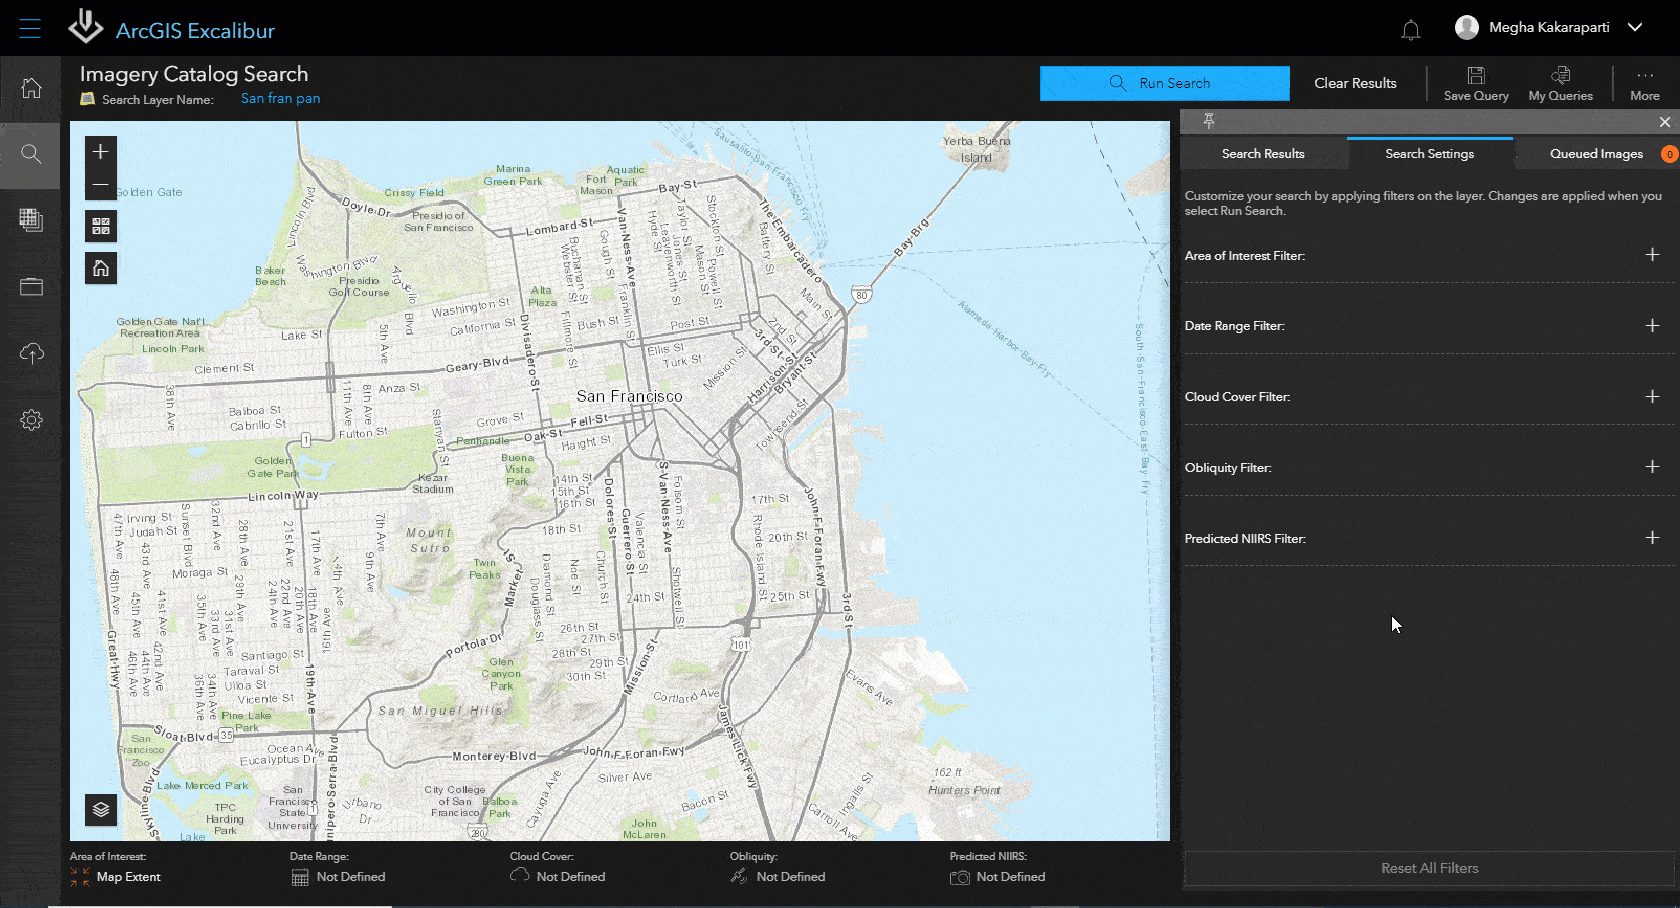 Цифровая карта Сан-Франциско с красными линиями в квадрате, представляющими доступный поиск изображений в ArcGIS Excalibur 